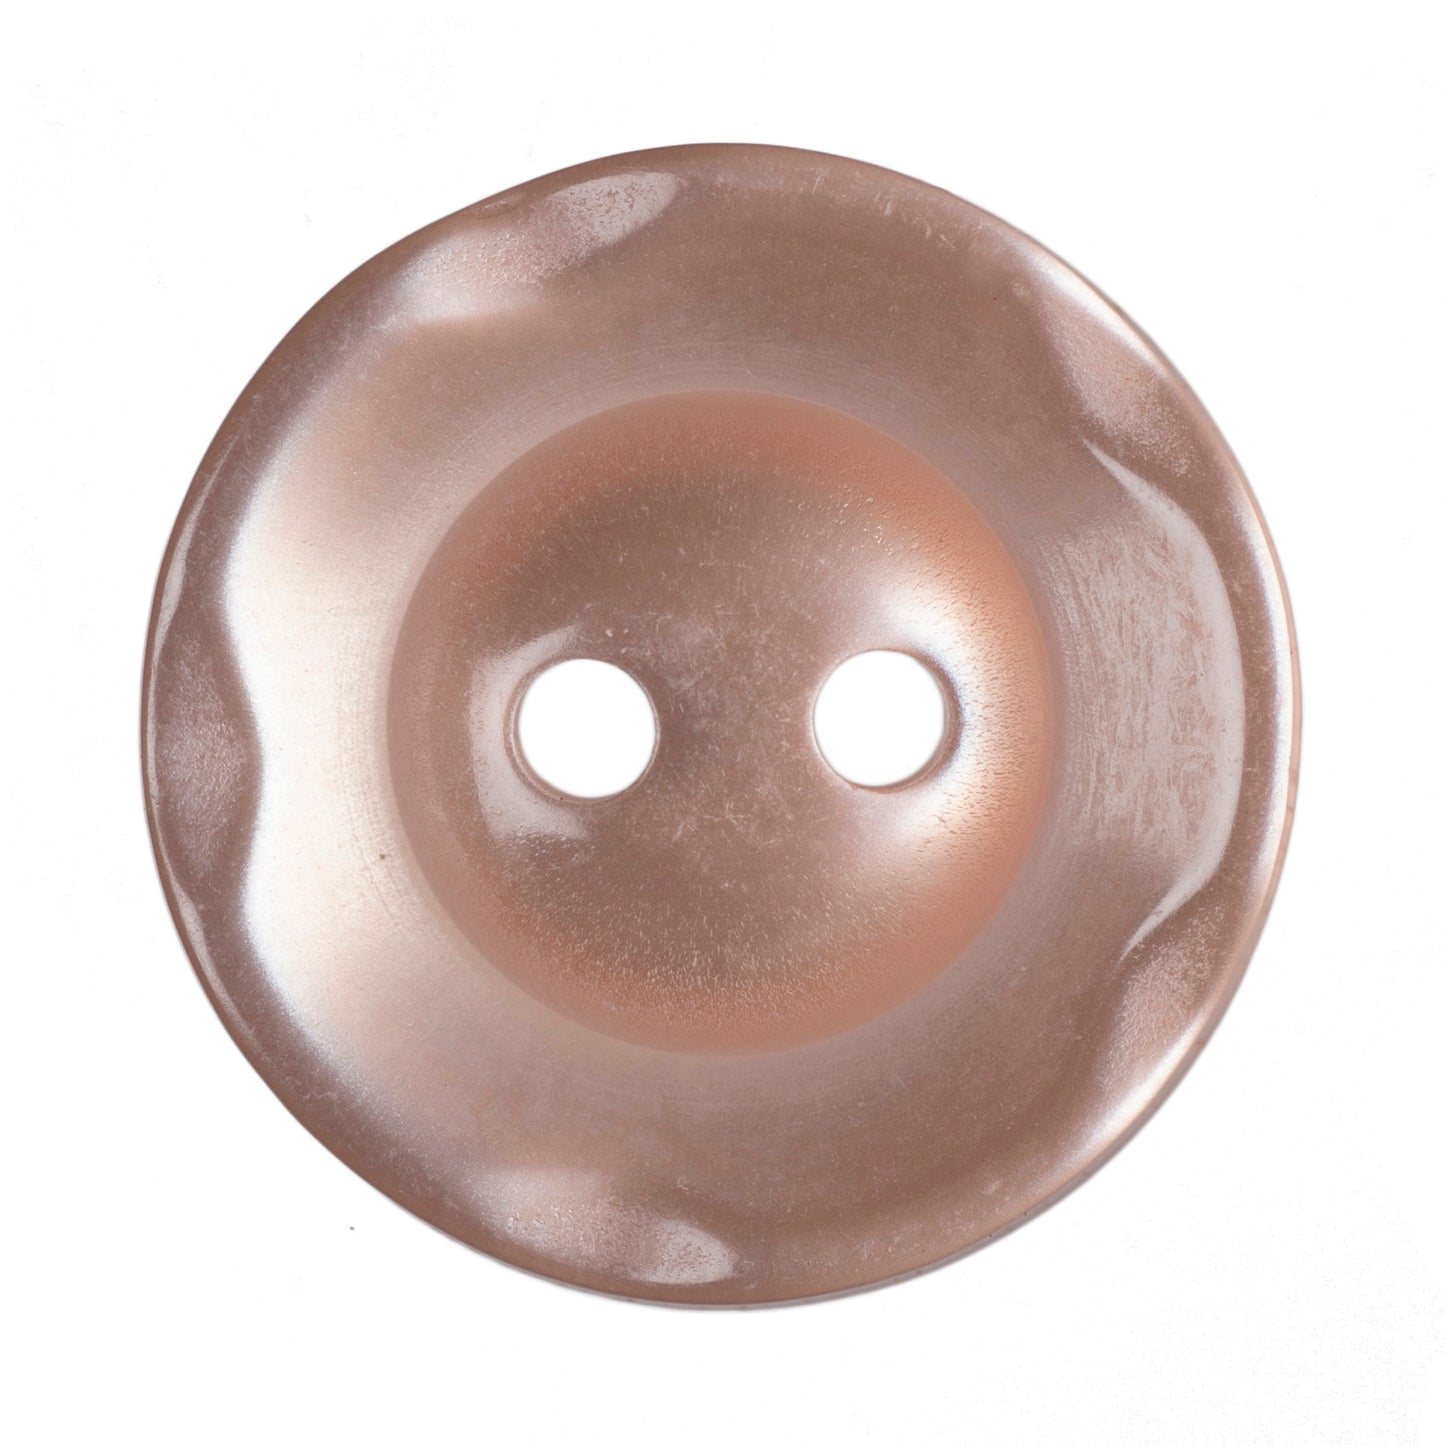 Scalloped Edge Button - Peach 16mm